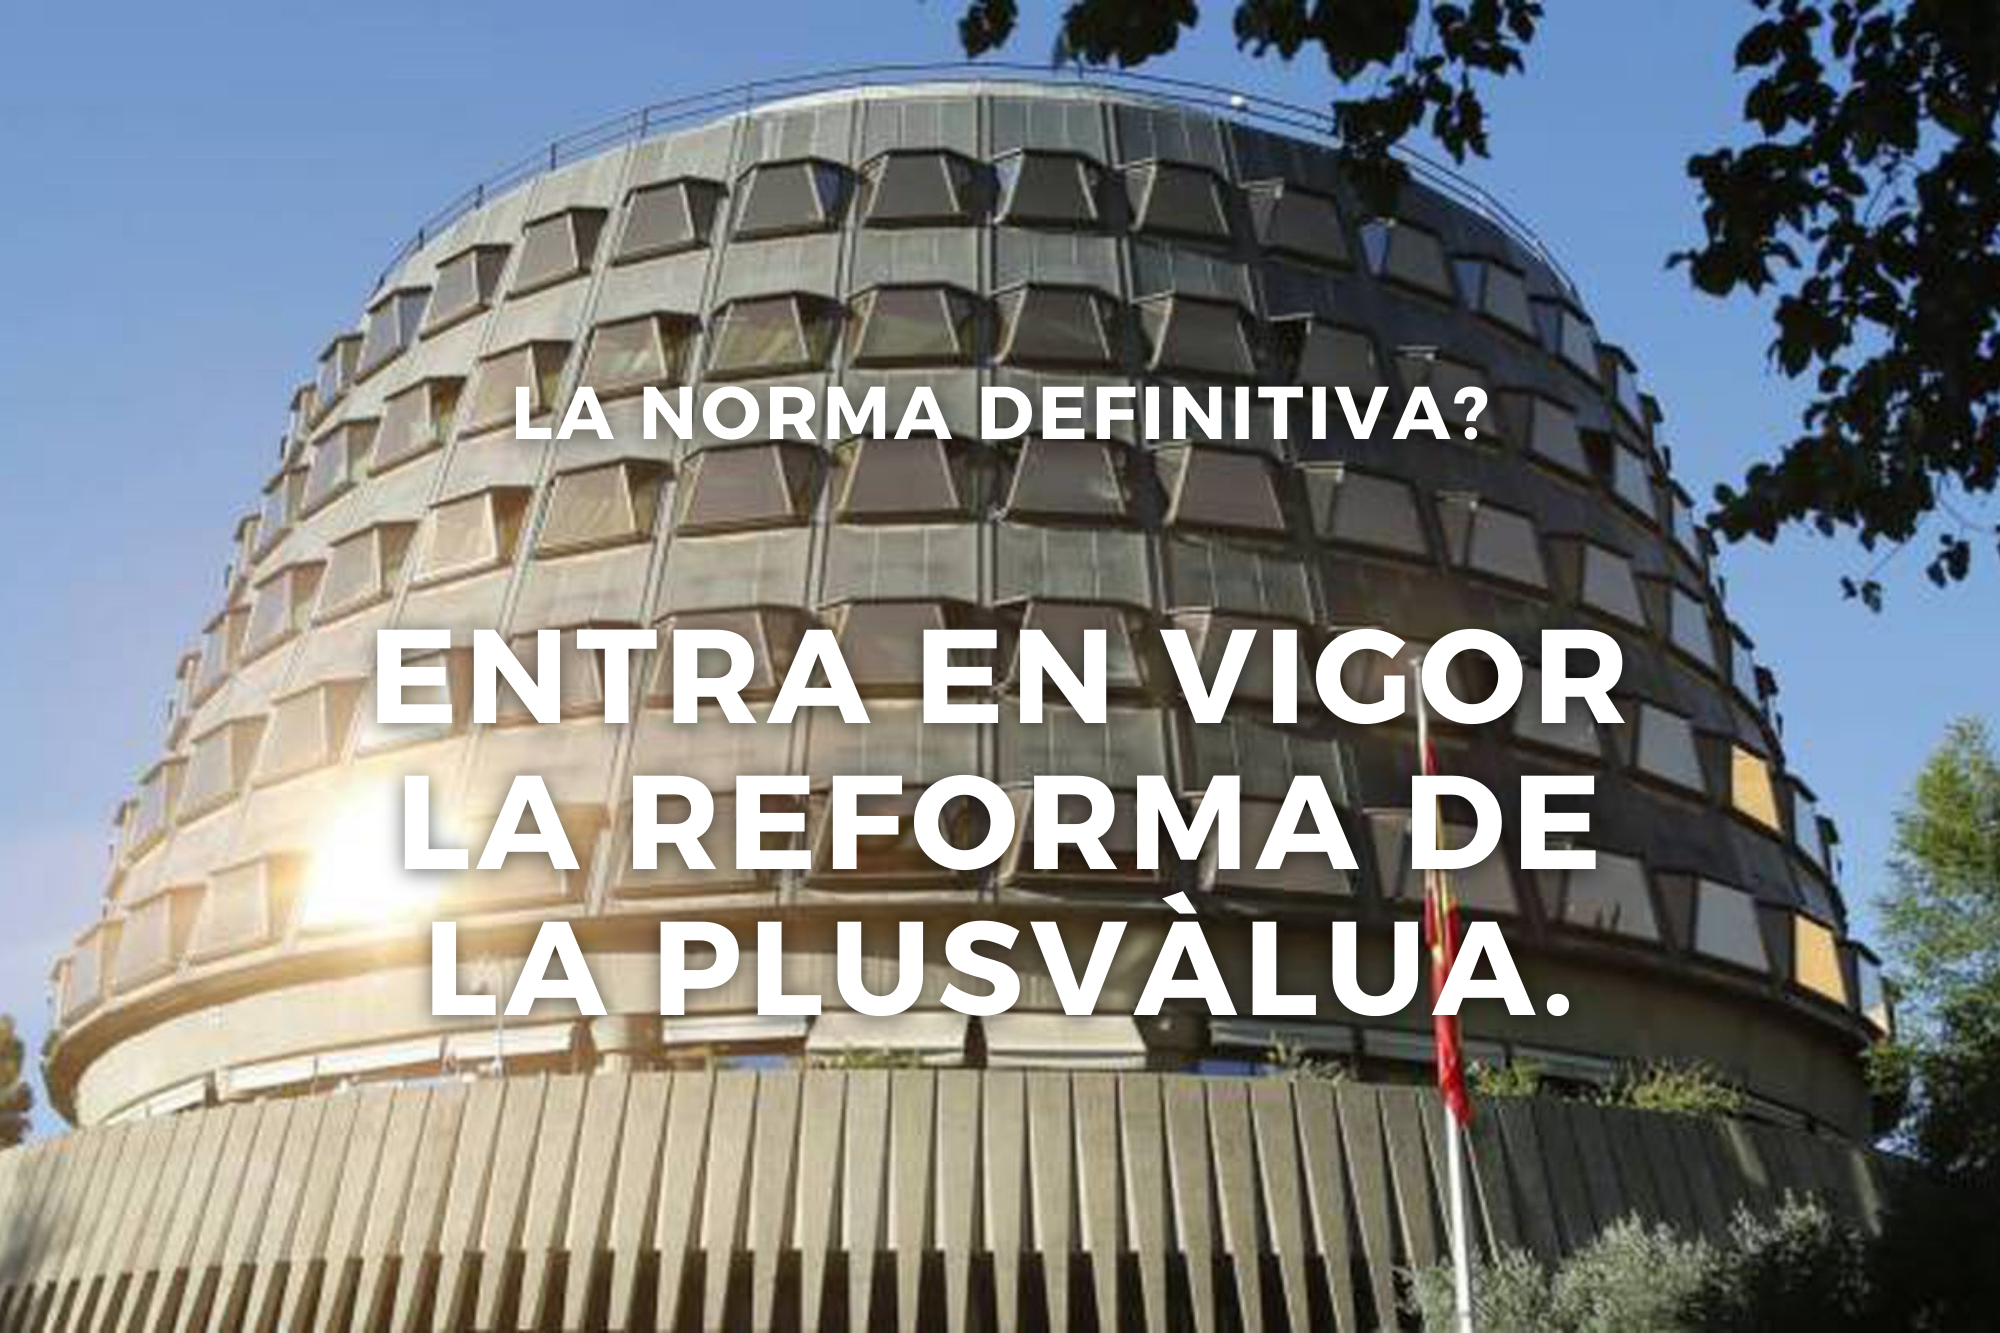 Entra En Vigor La Reforma De La Plusvàlua. La Norma Definitiva?